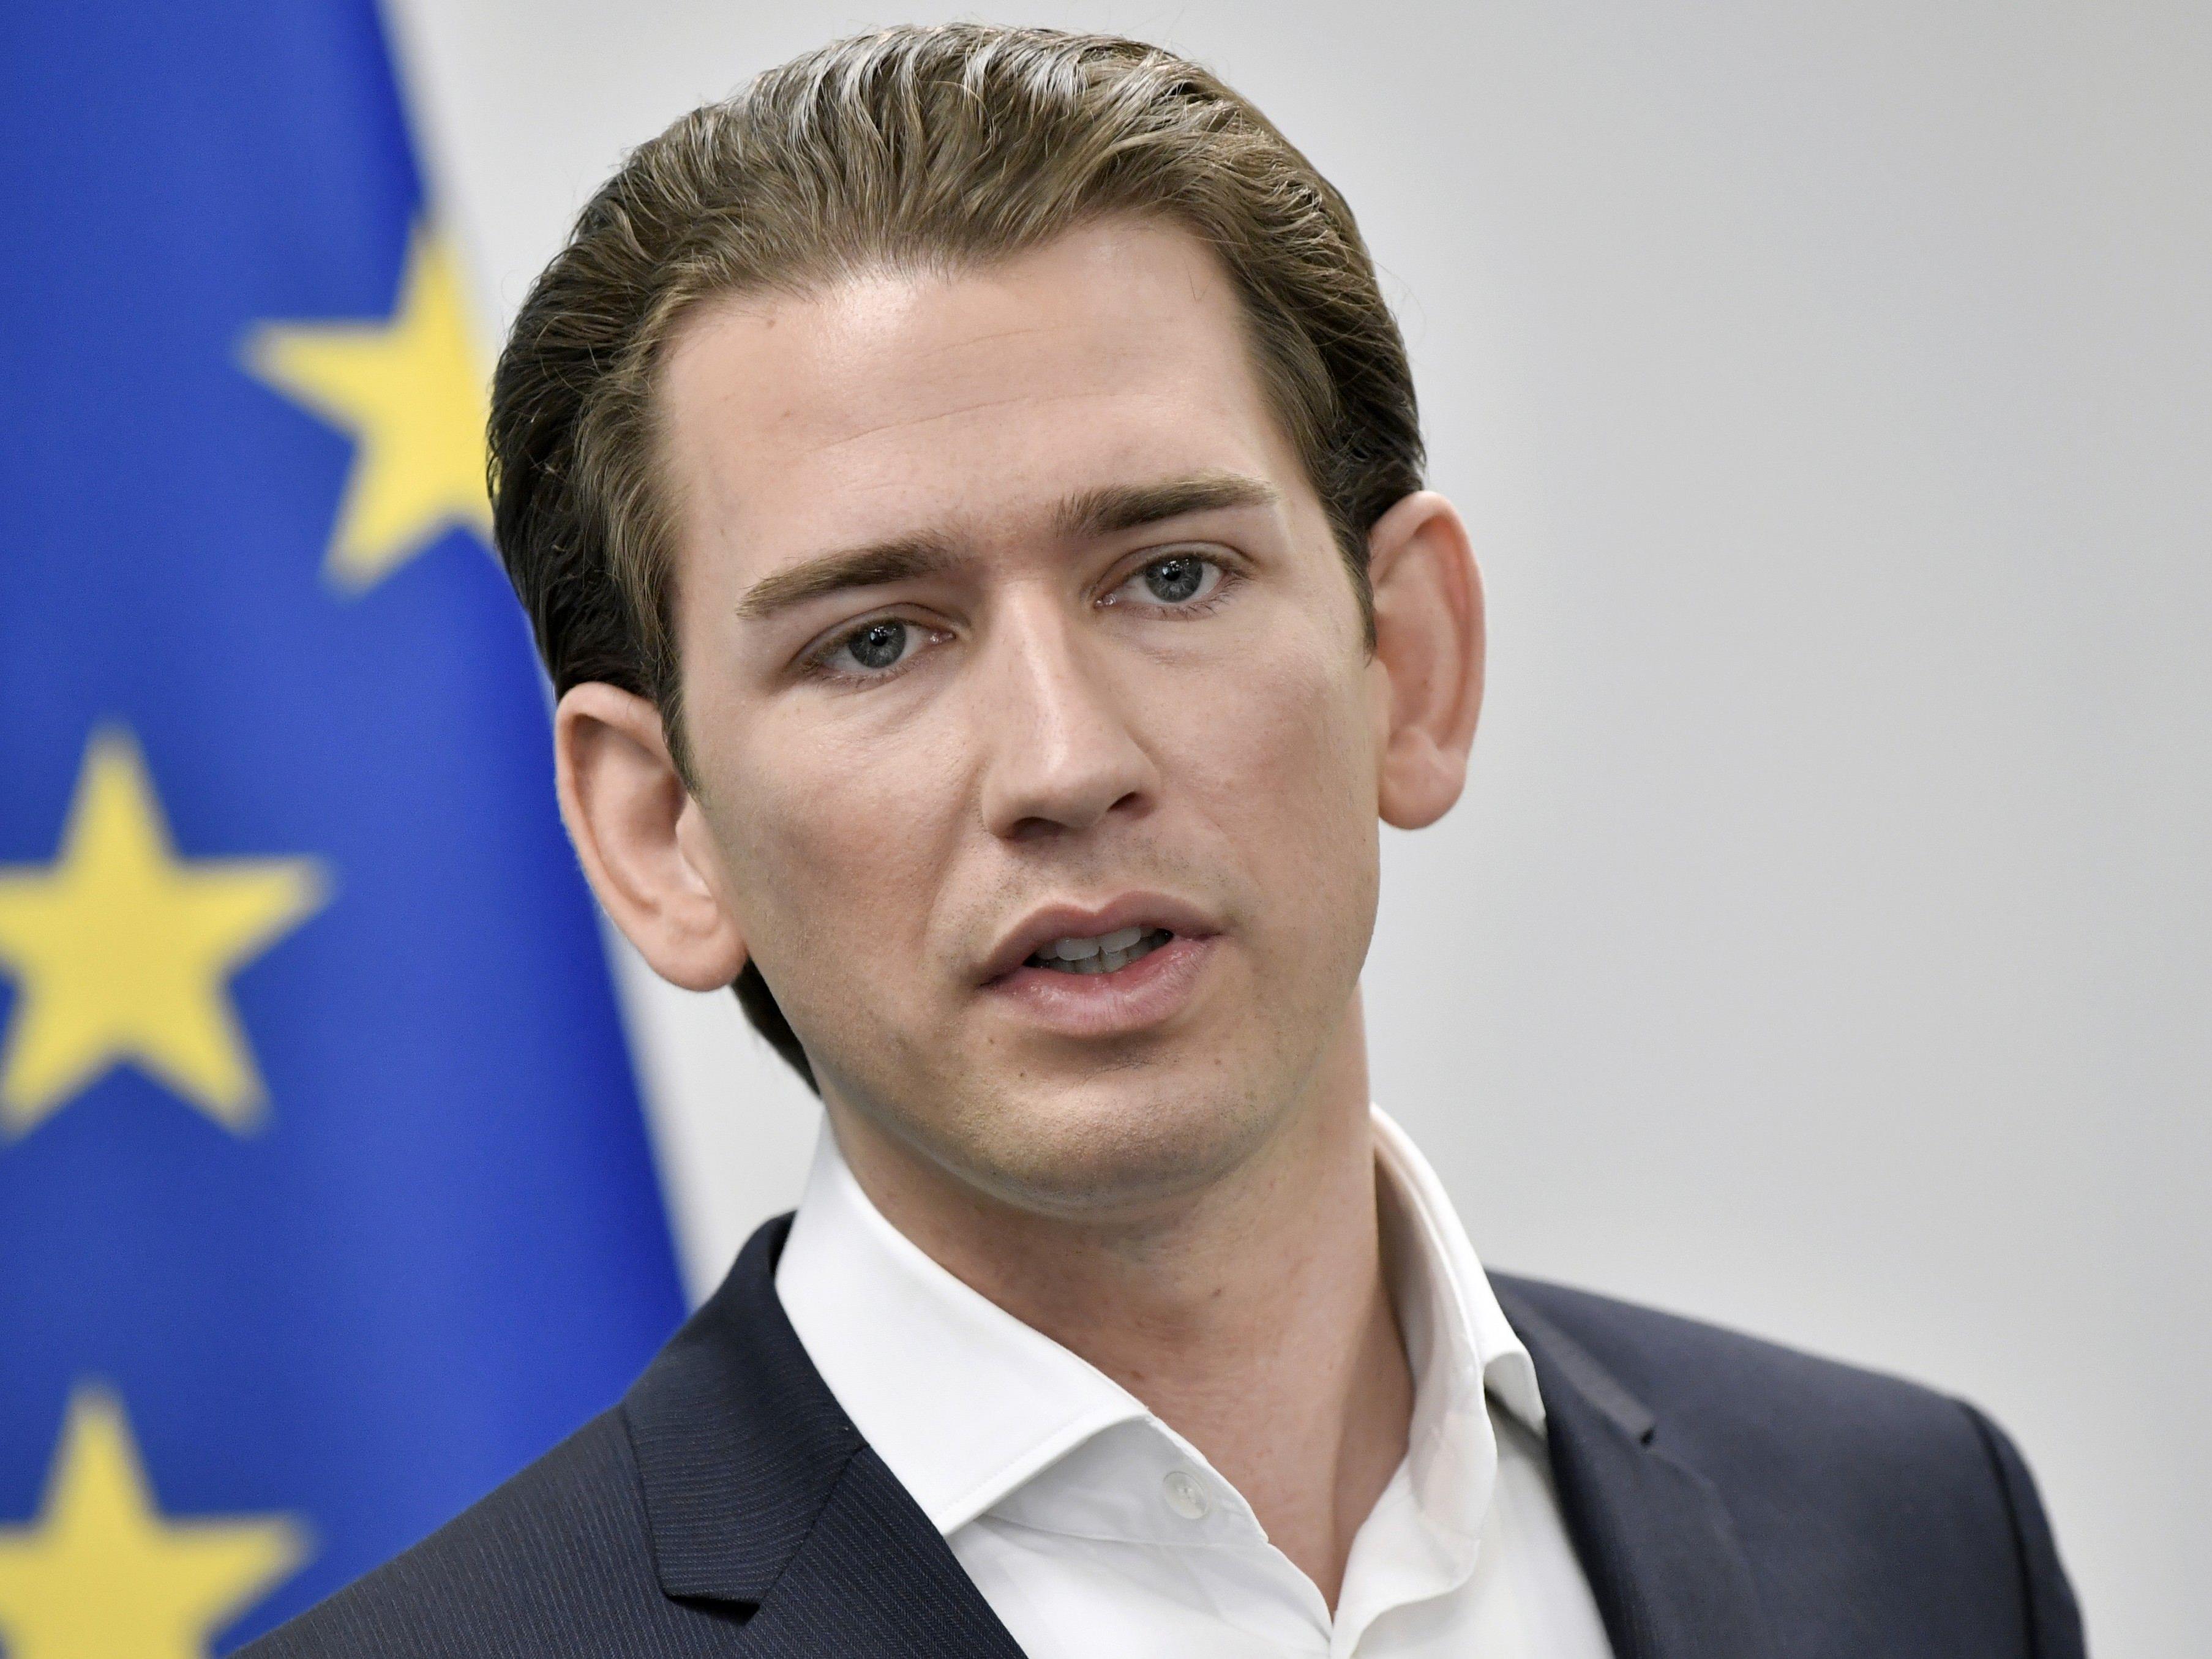 Österreichs Außenminister Sebastian Kurz will die Flüchtlingsströme über das Mittelmeer stoppen.